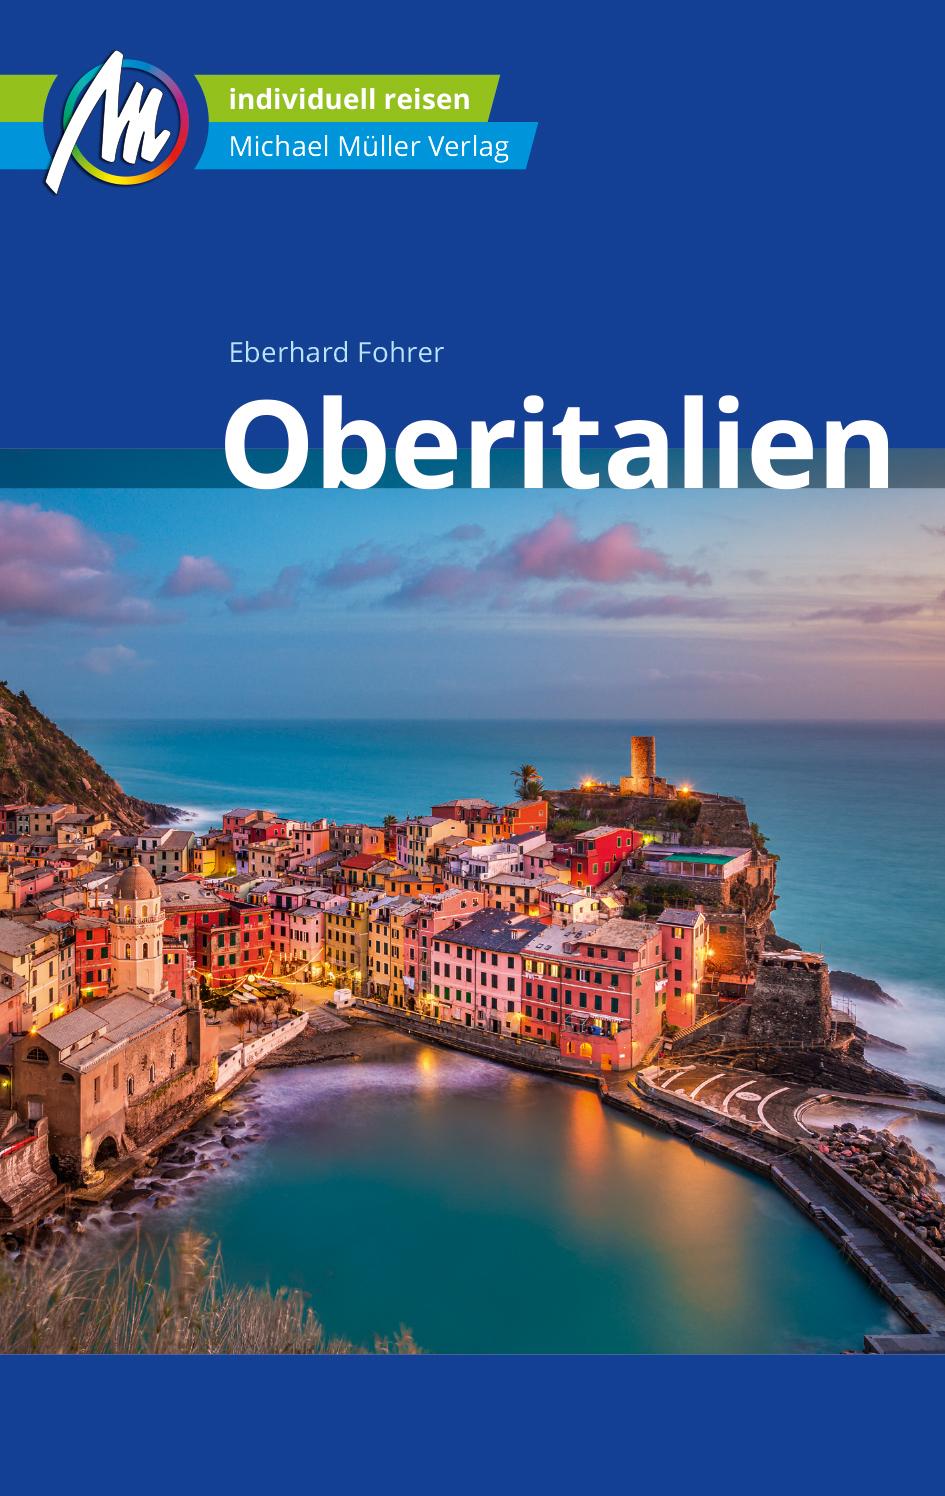 Oberitalien Reiseführer Michael Müller Verlag Individuell reisen mit vielen praktischen Tipps